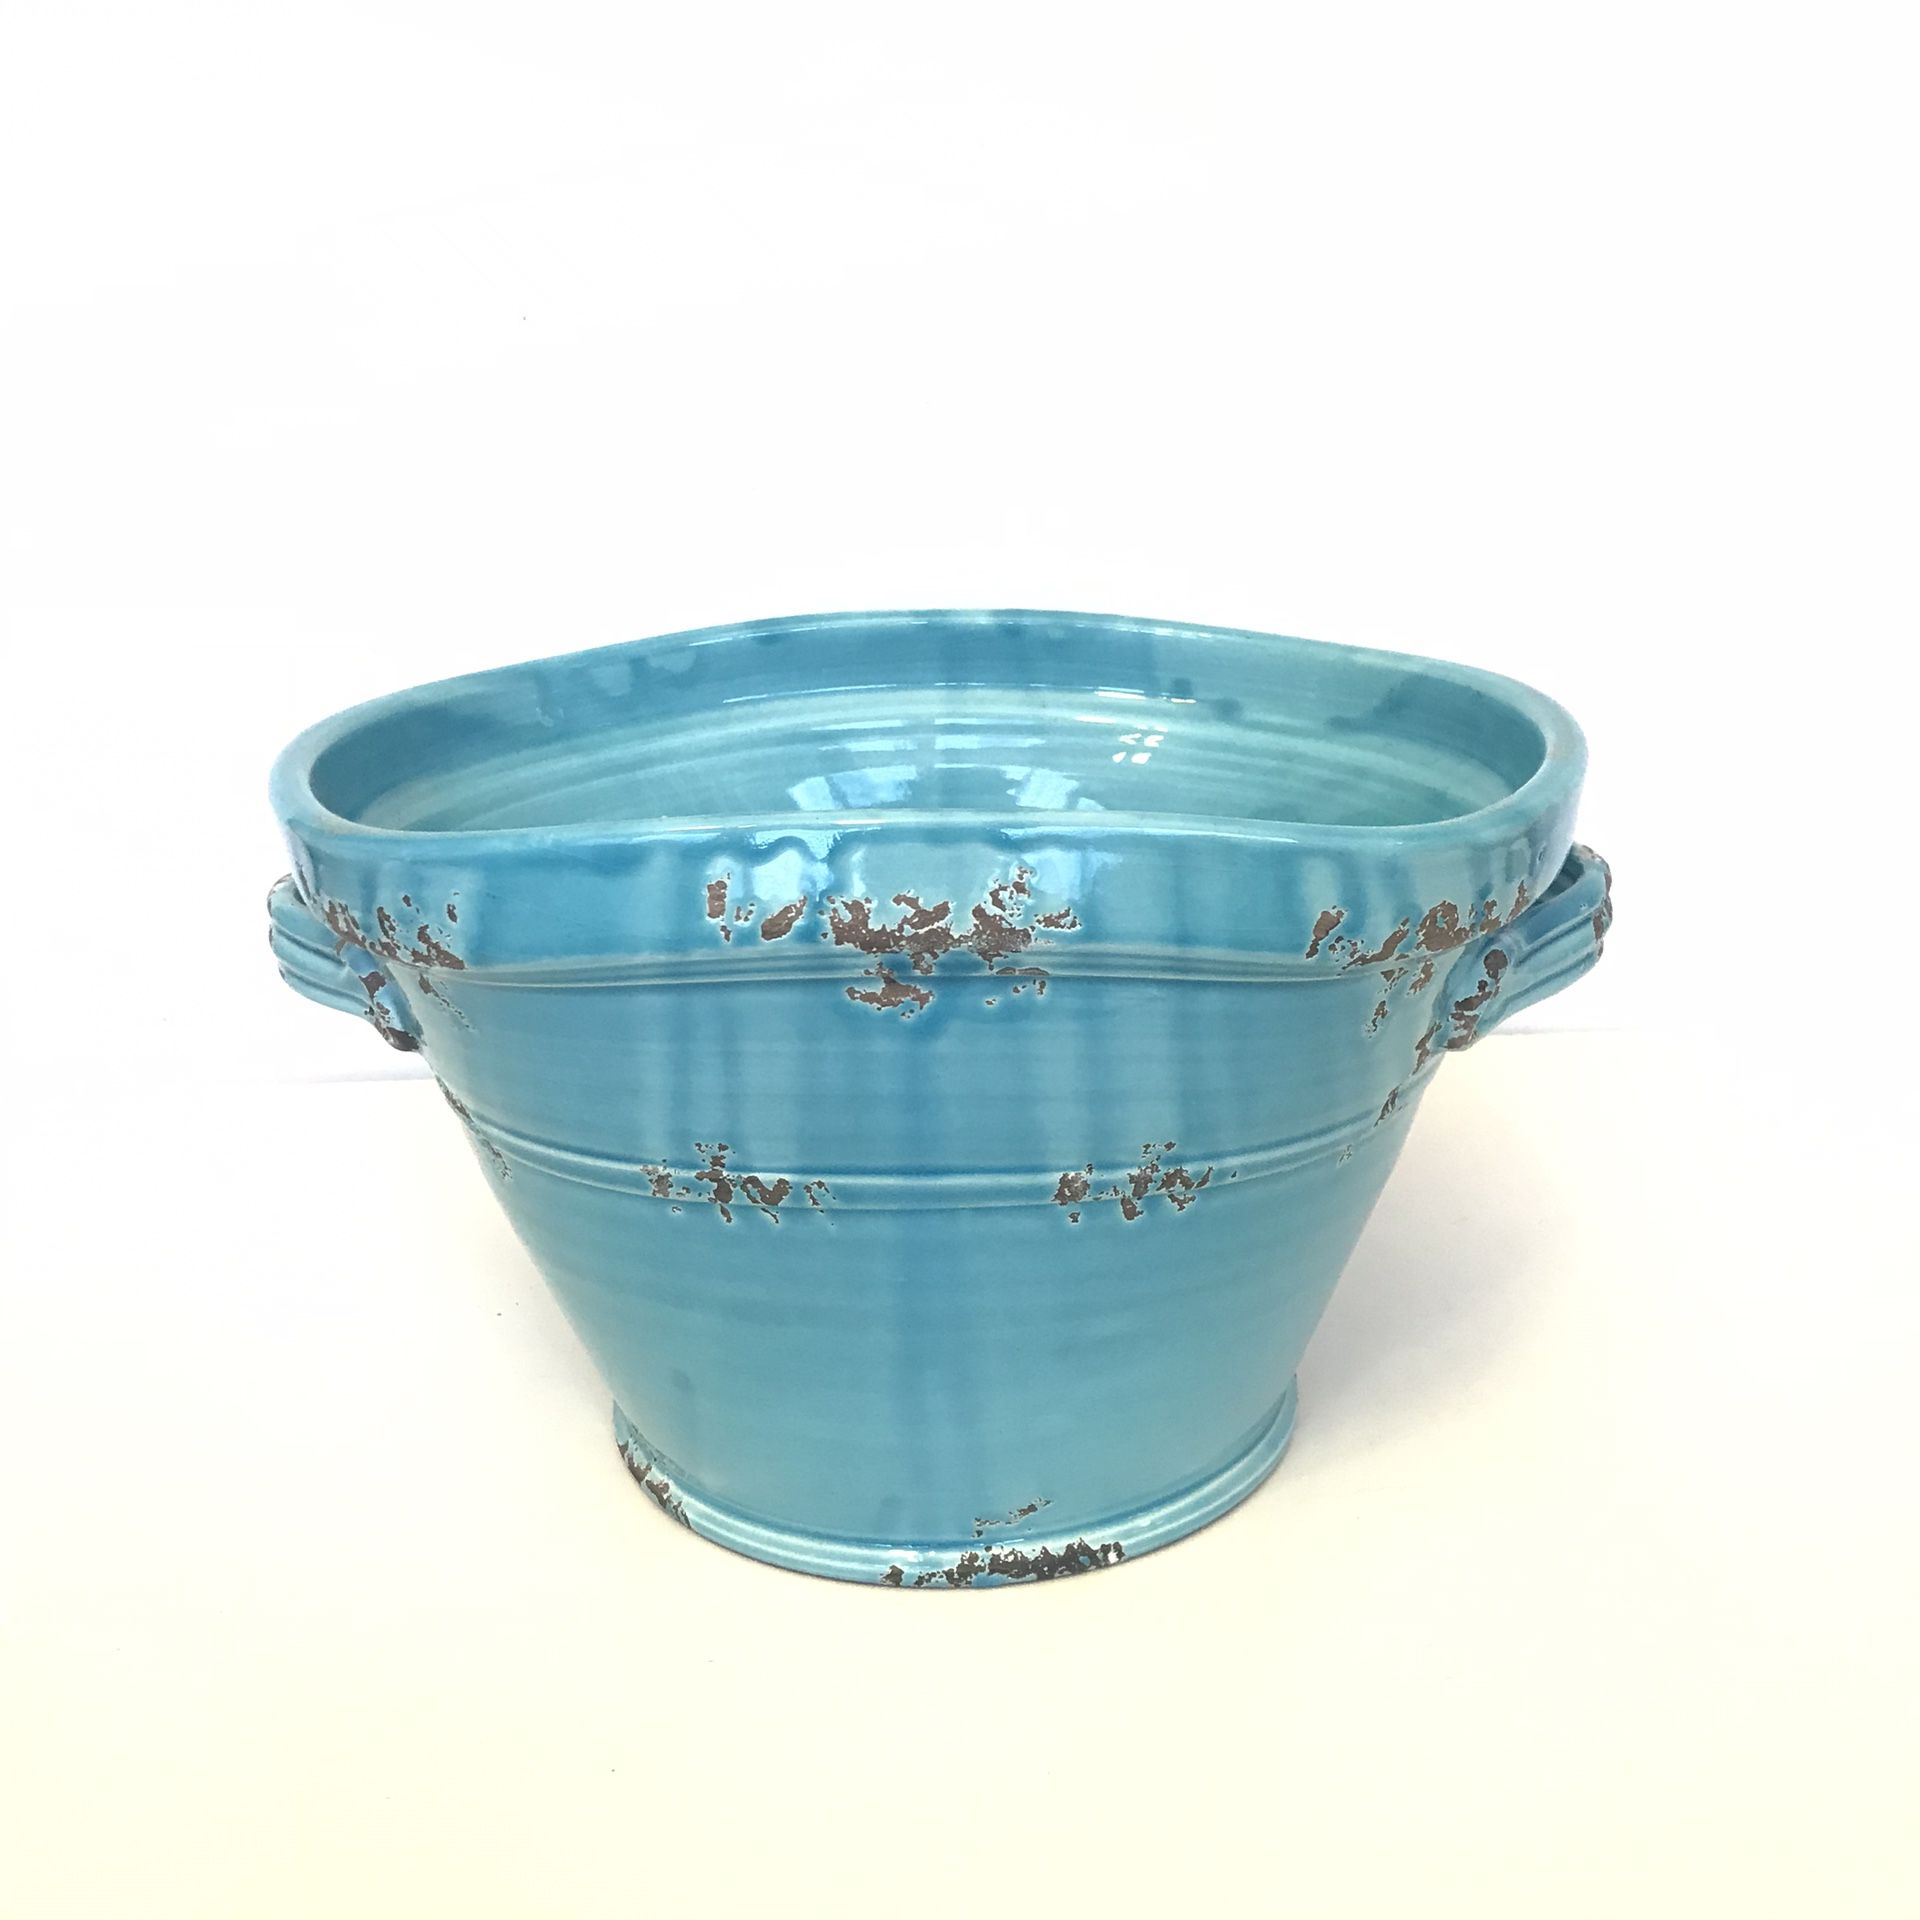 Bizzirri Portofino ceramic turquoise huge bowl 12”x9”x9”